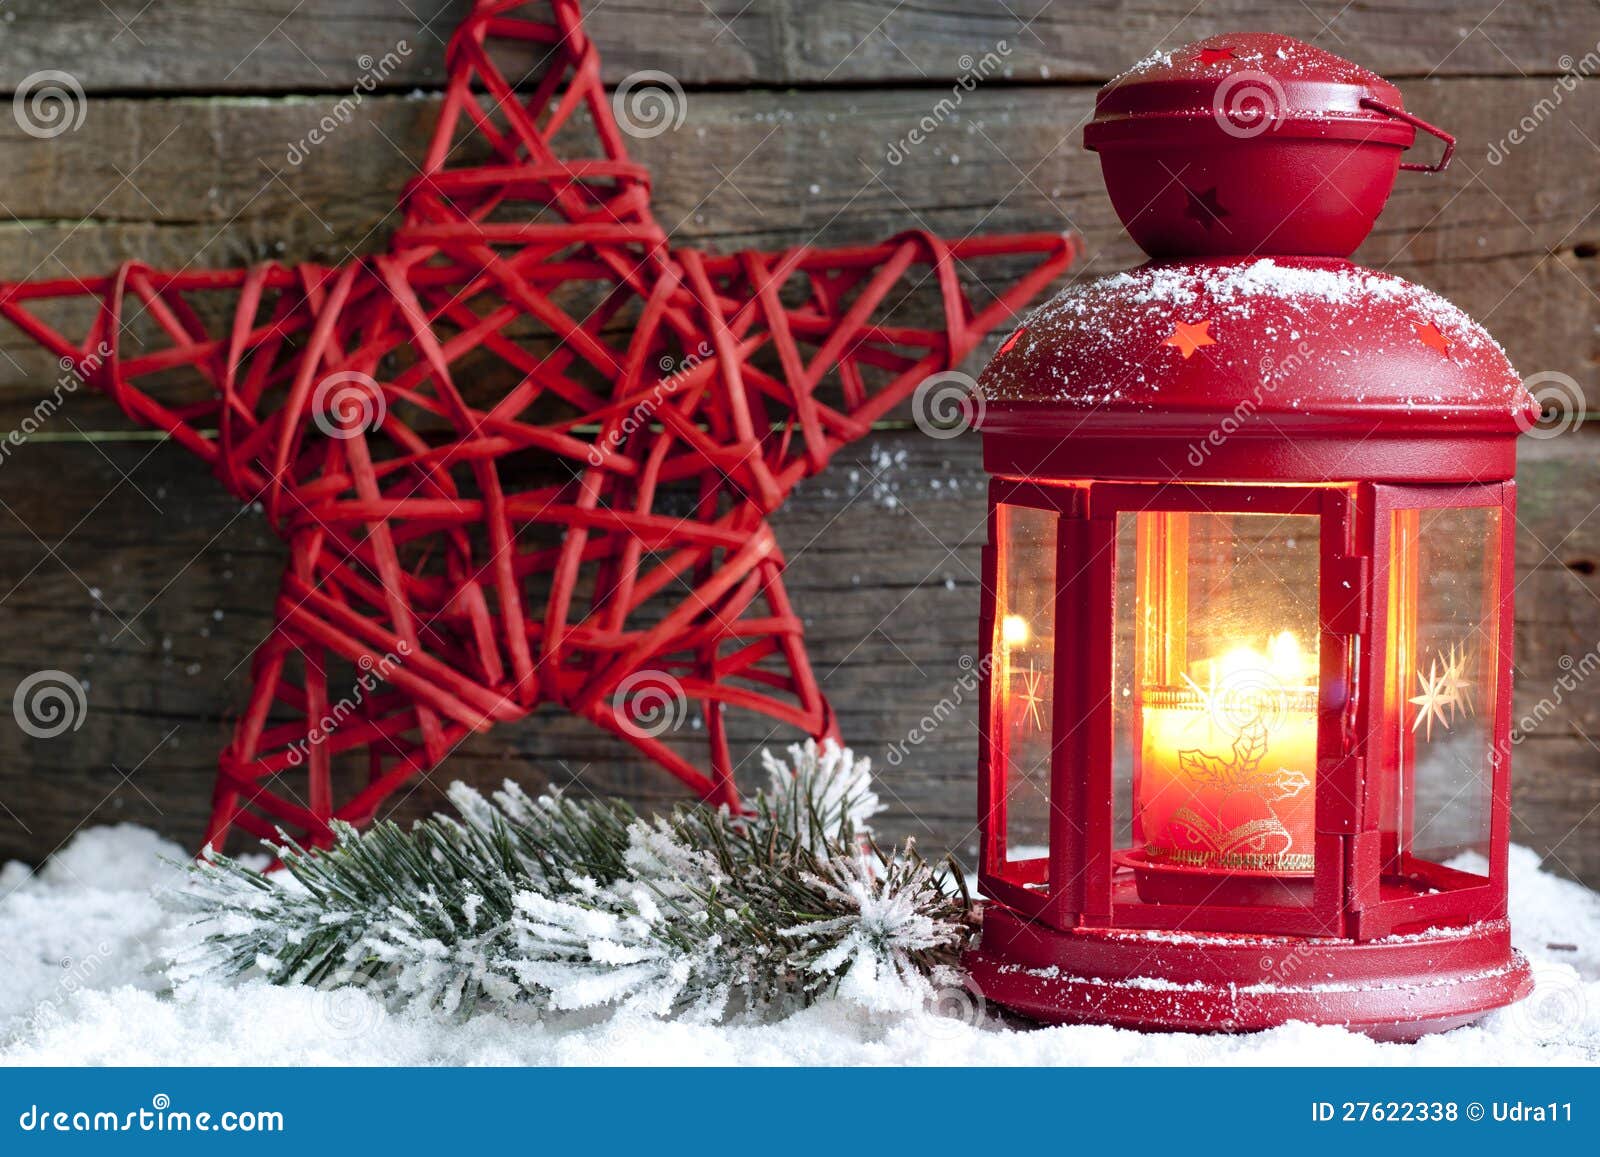 Sfondi Natalizi Lanterna.Stella E Lanterna Rosse Di Natale Fotografia Stock Immagine Di Incandescenza Nuovo 27622338